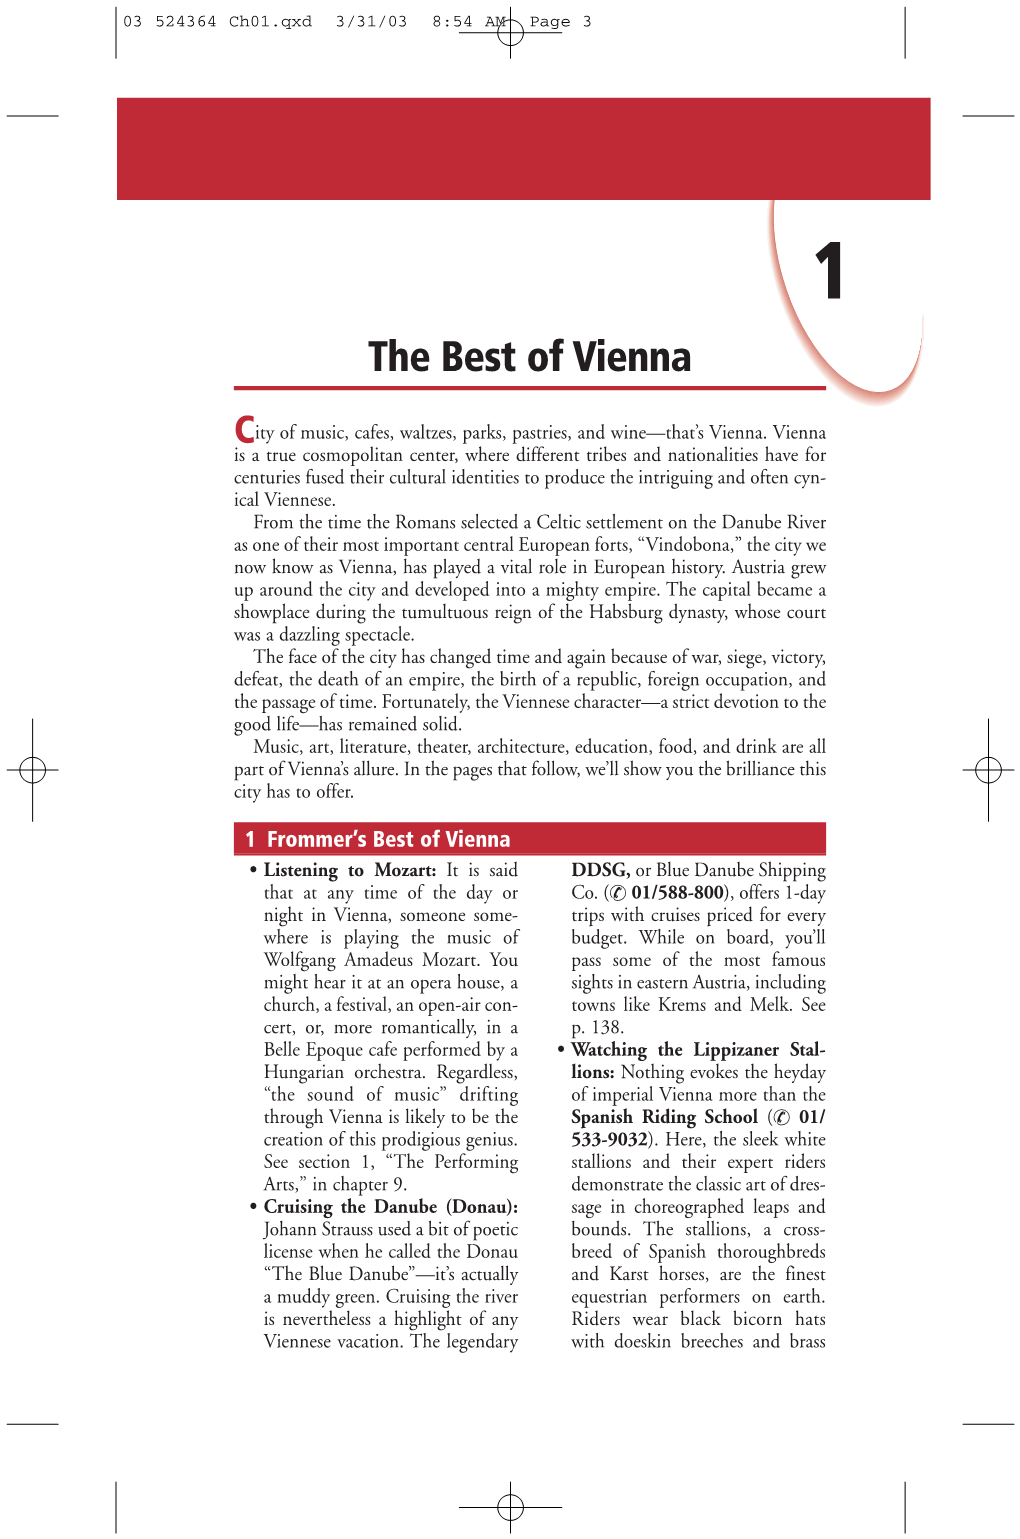 The Best of Vienna